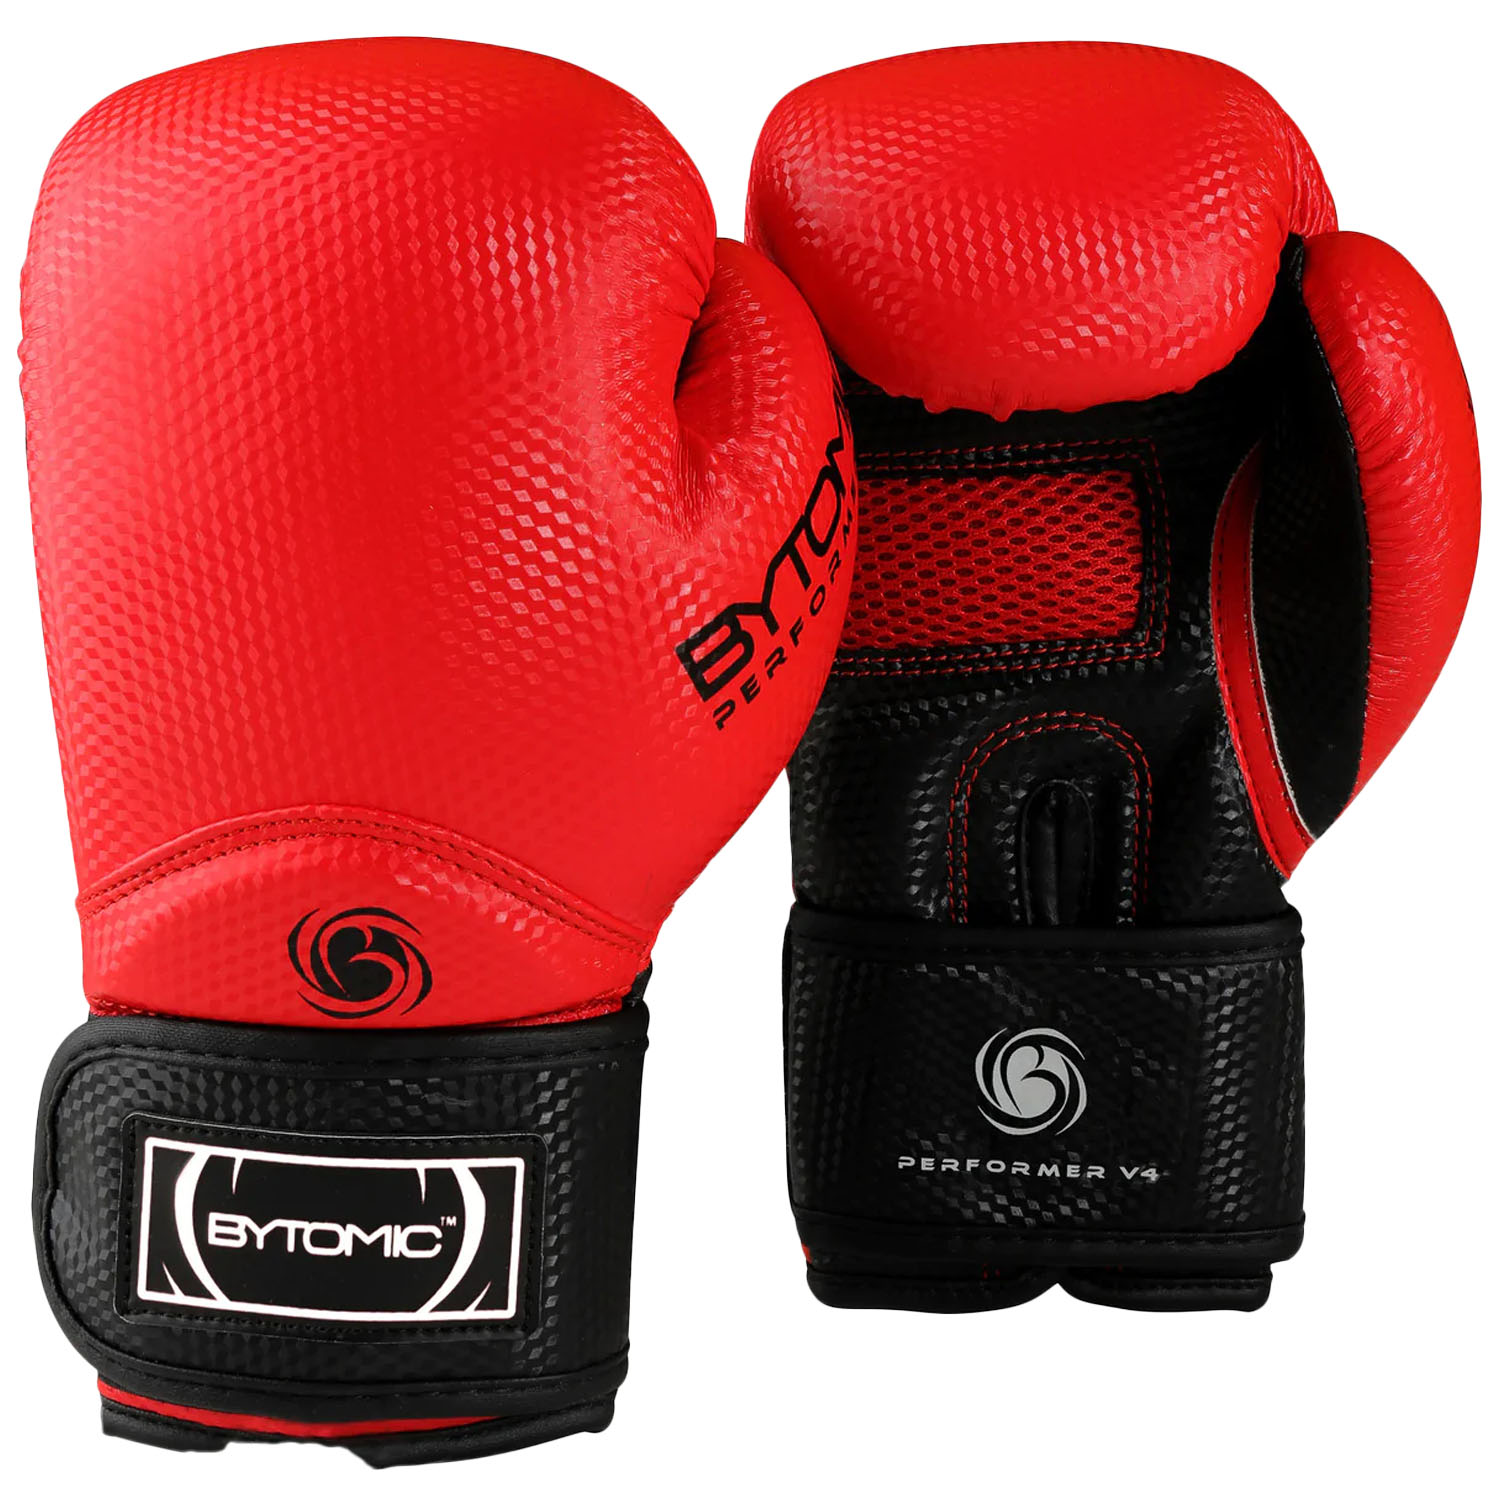 Bytomic Boxing Gloves, Performer, V4, rot, 16 Oz